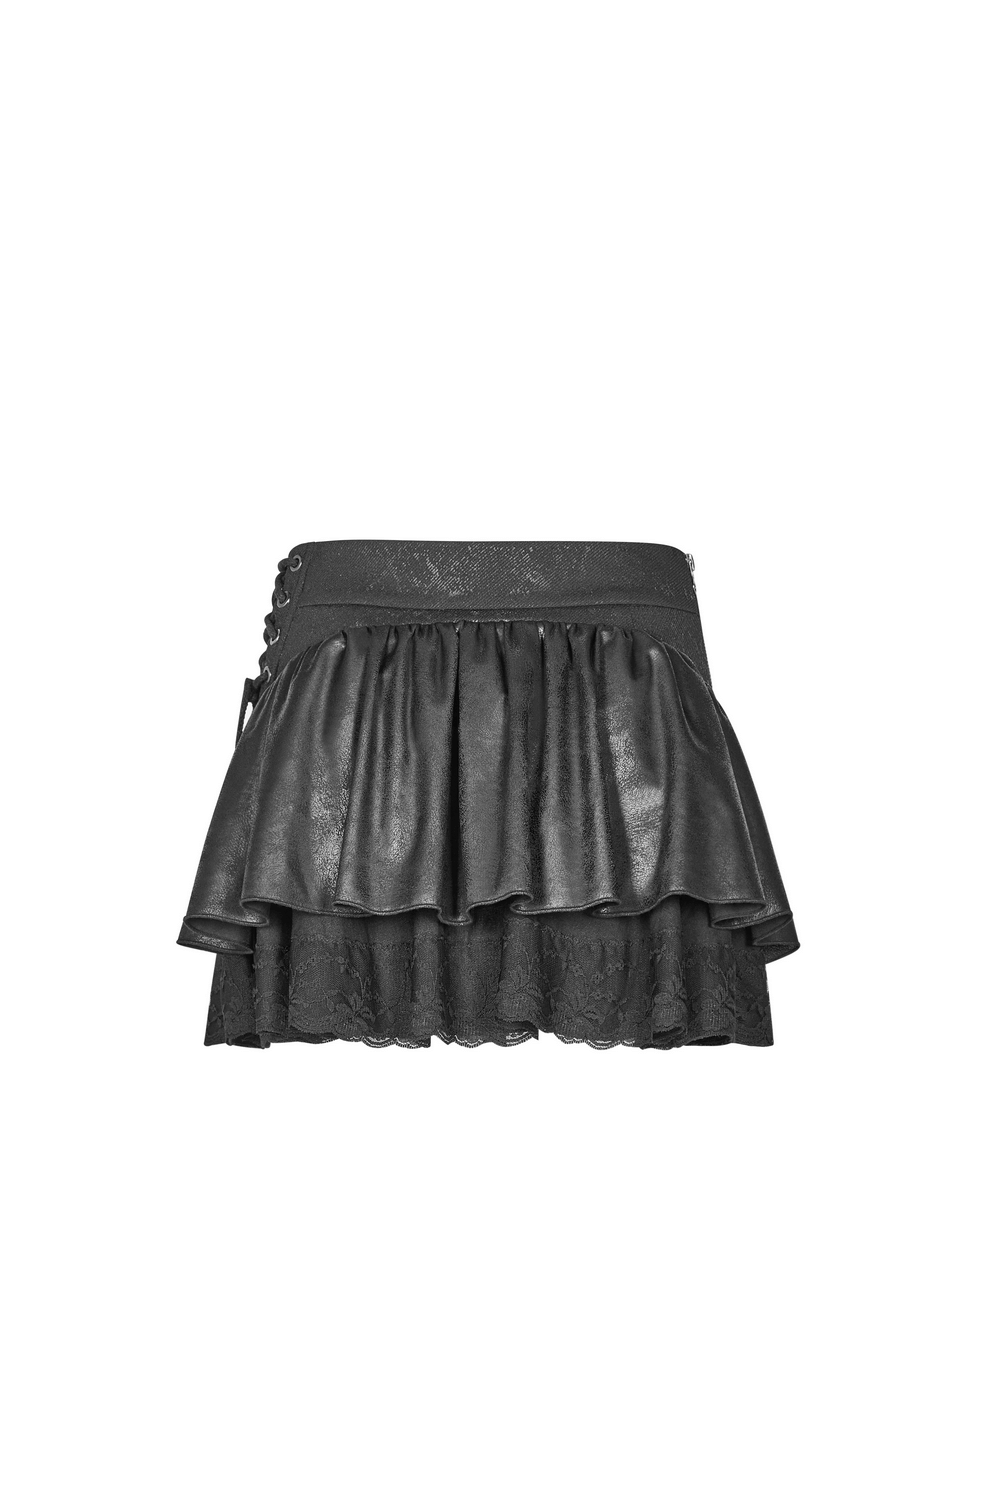 Stylish Punk Rave Mini Skirt with Ruffles and Lace